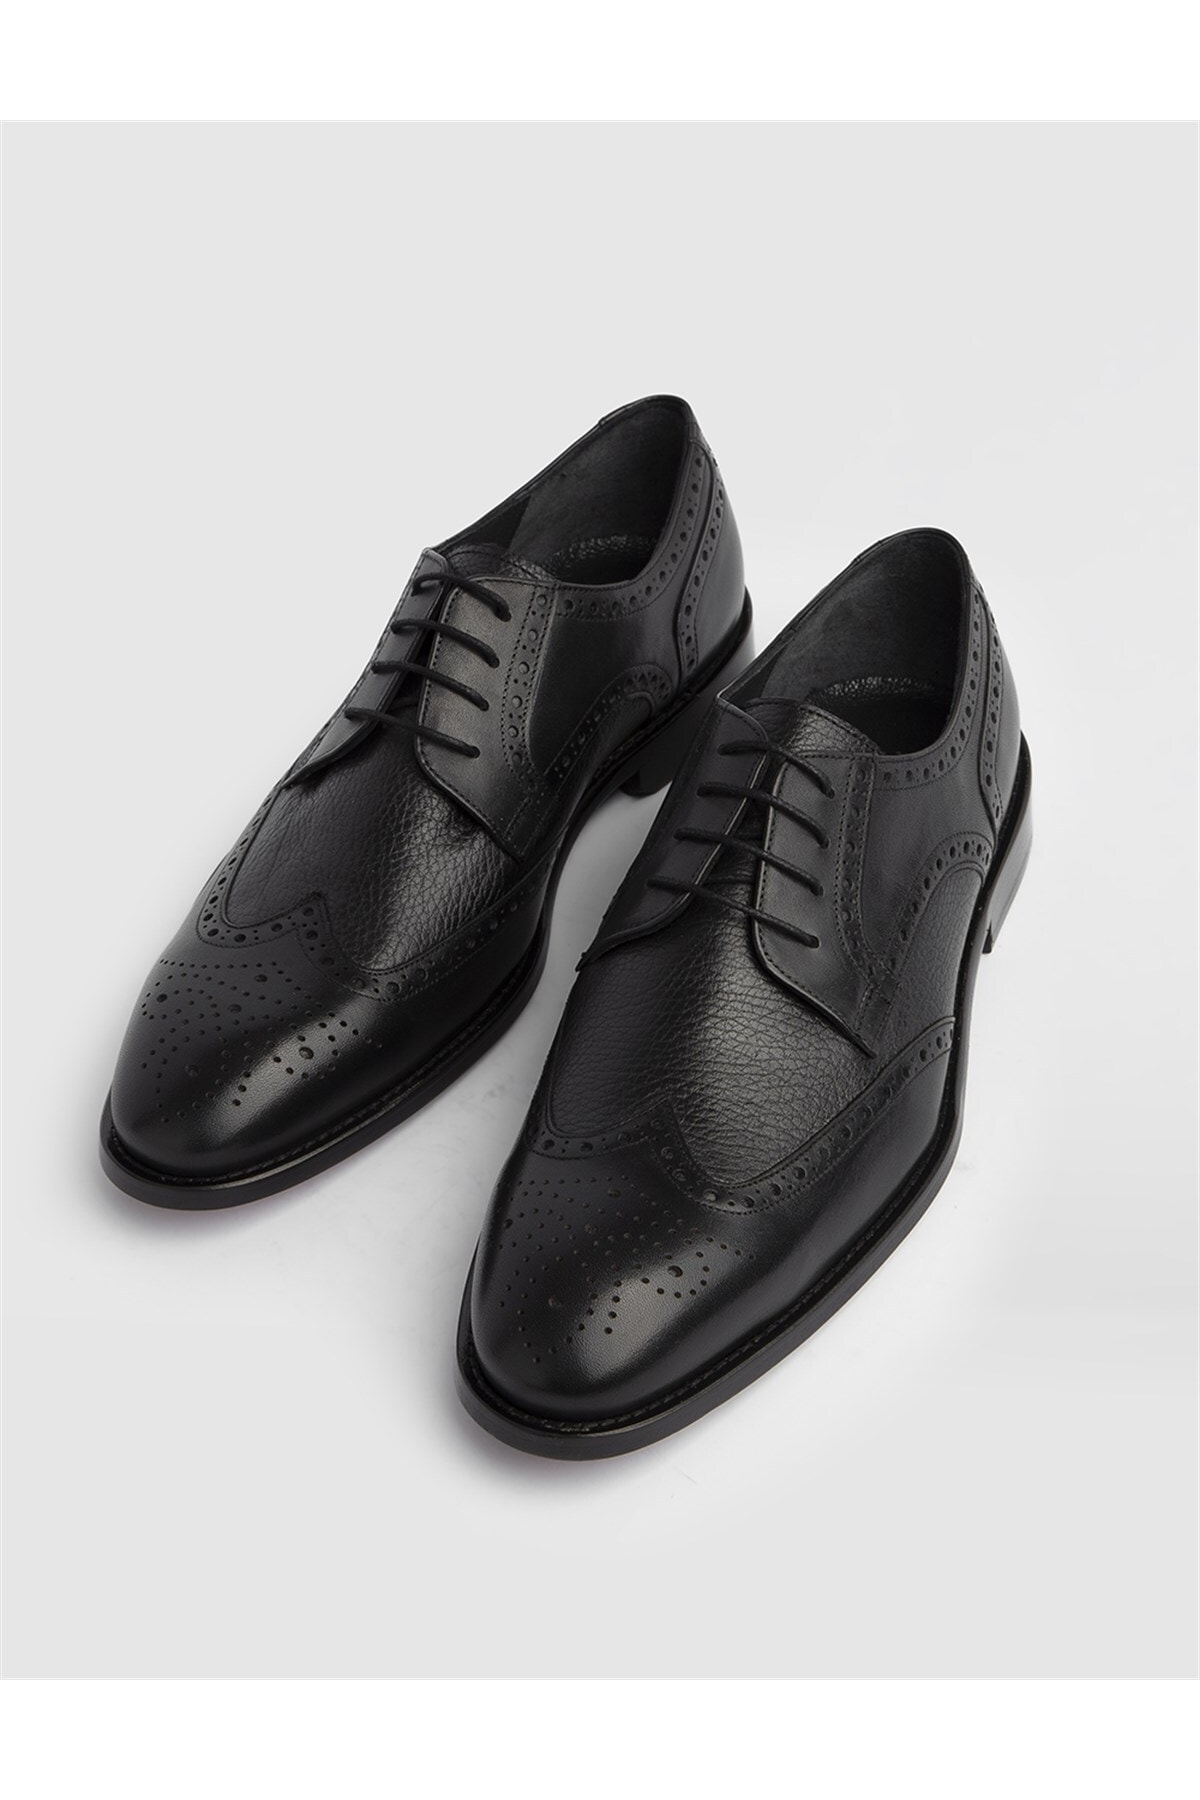 İLVİ Dalr Hakiki Antik Deri Erkek Siyah Klasik Ayakkabı